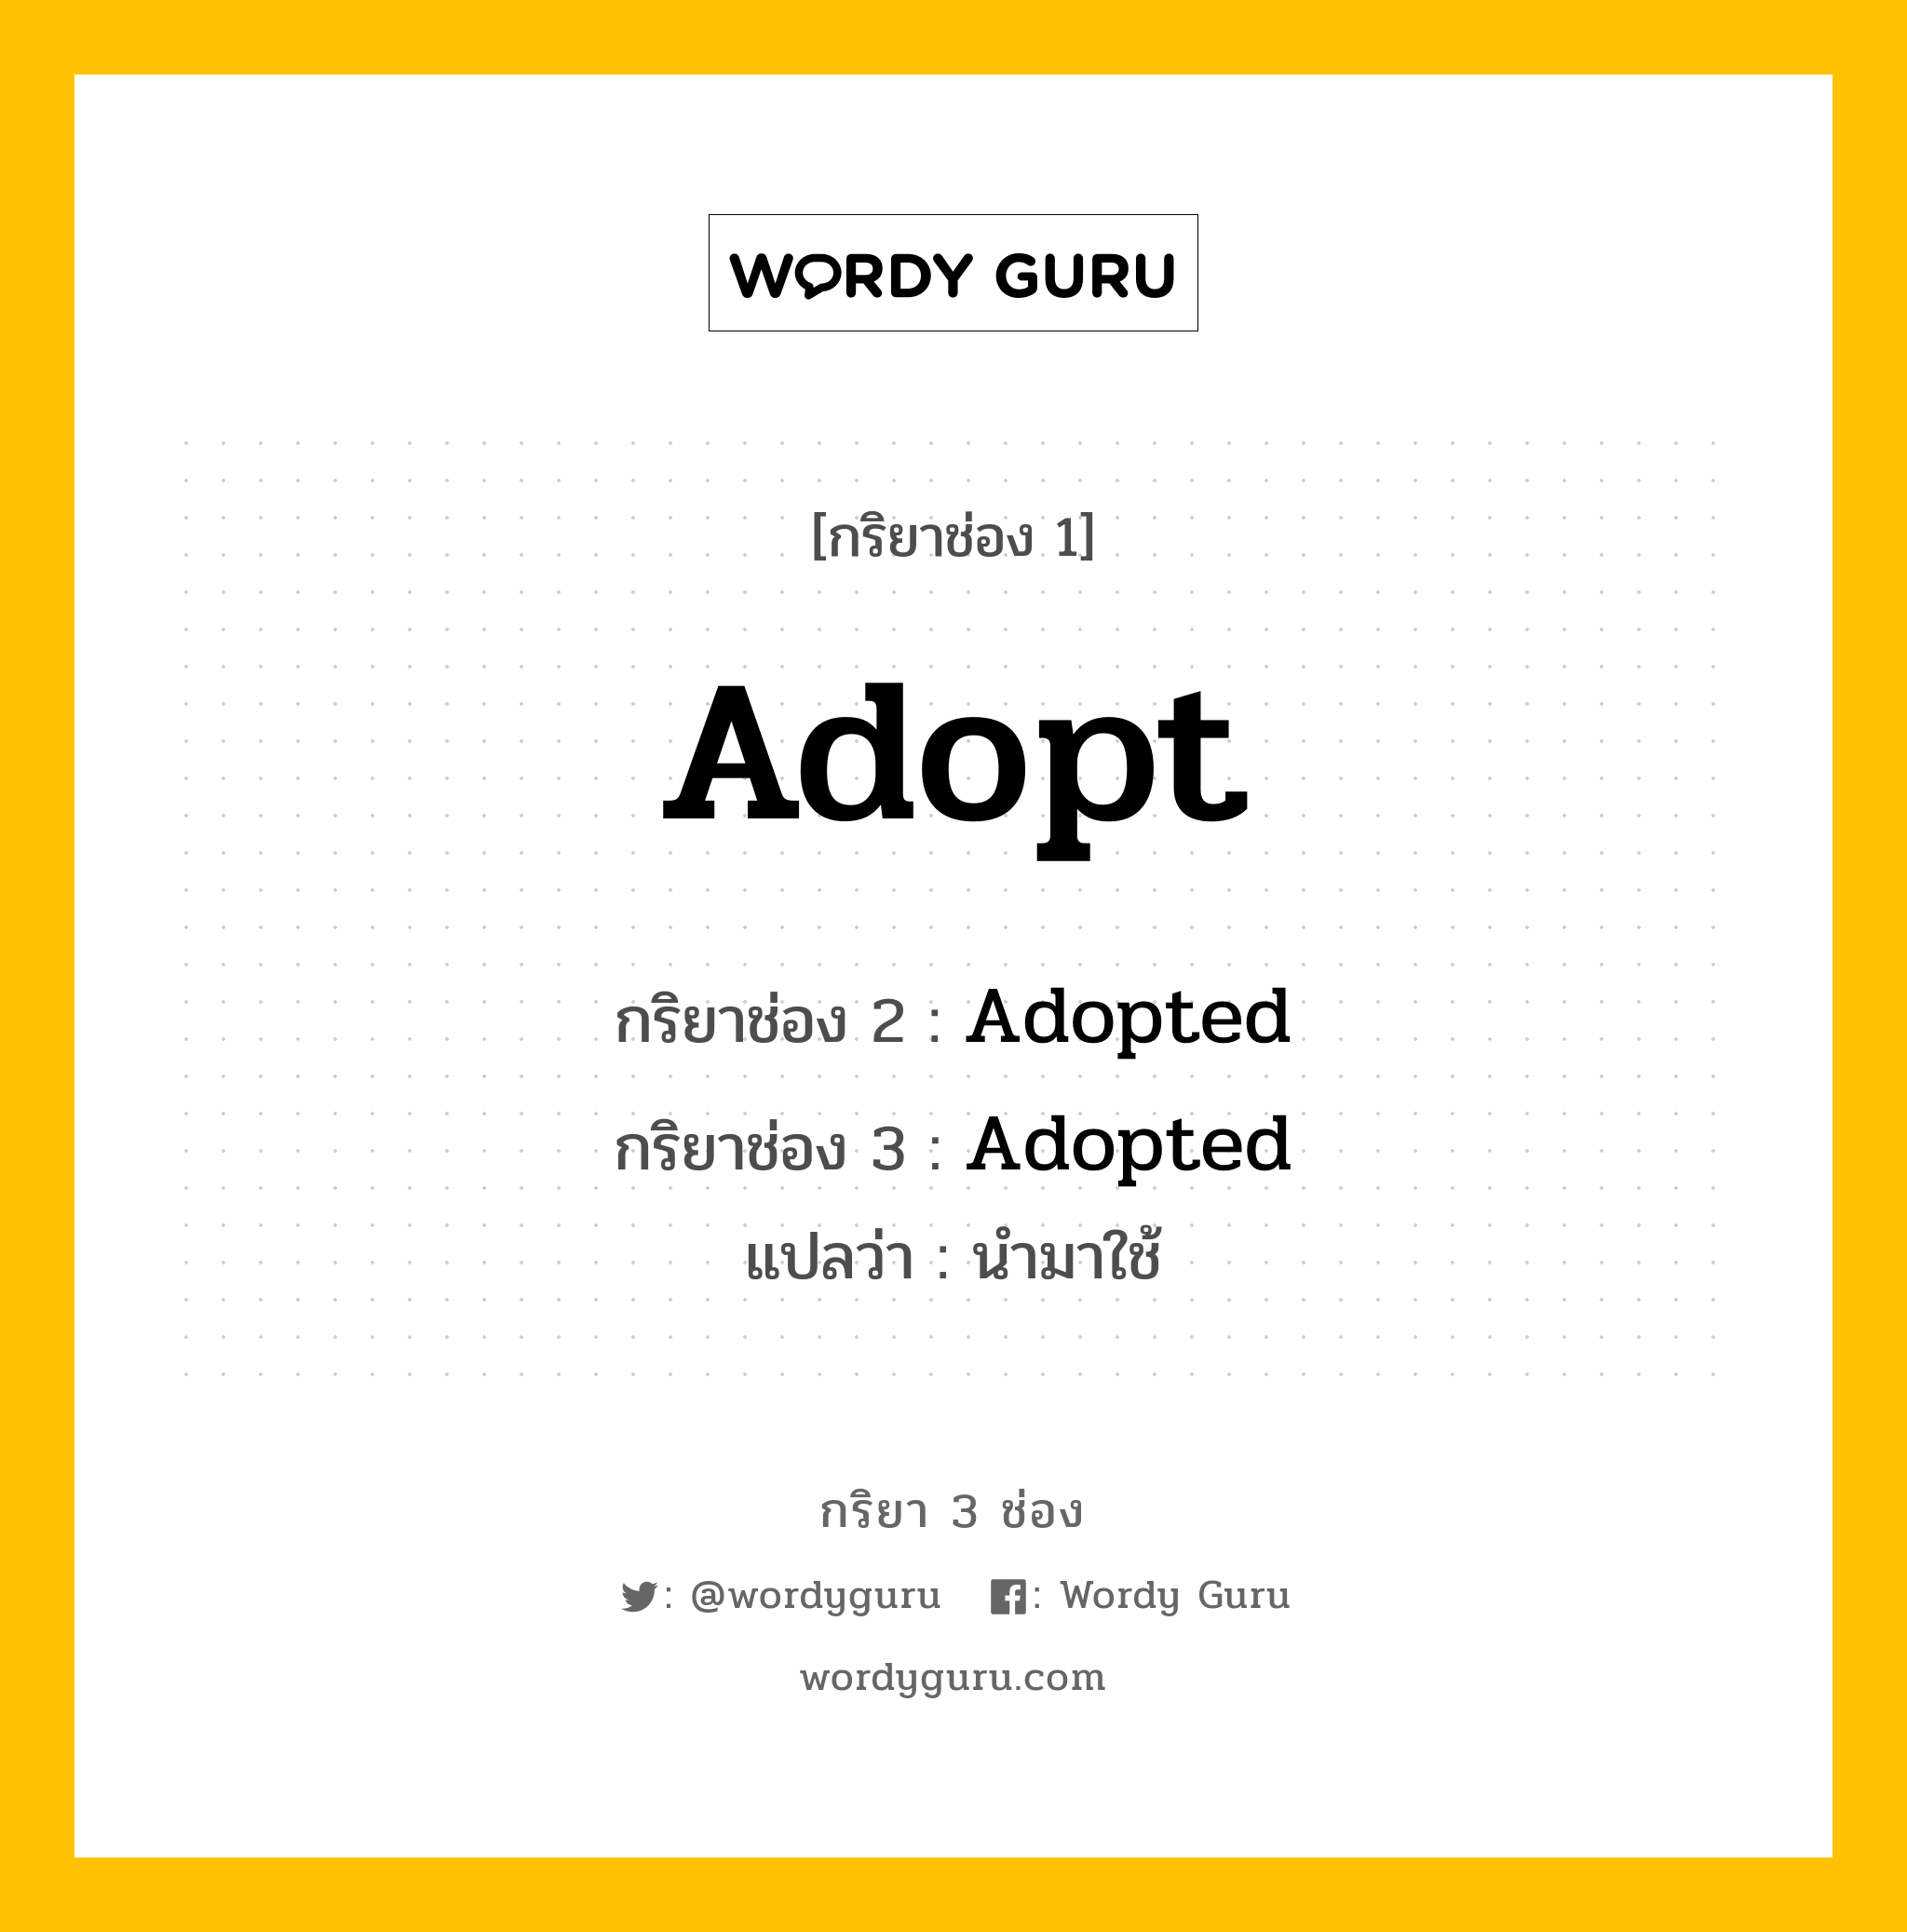 Adopt มีกริยา 3 ช่องอะไรบ้าง? คำศัพท์ในกลุ่มประเภท Regular Verb, กริยาช่อง 1 Adopt กริยาช่อง 2 Adopted กริยาช่อง 3 Adopted แปลว่า นำมาใช้ หมวด Regular Verb